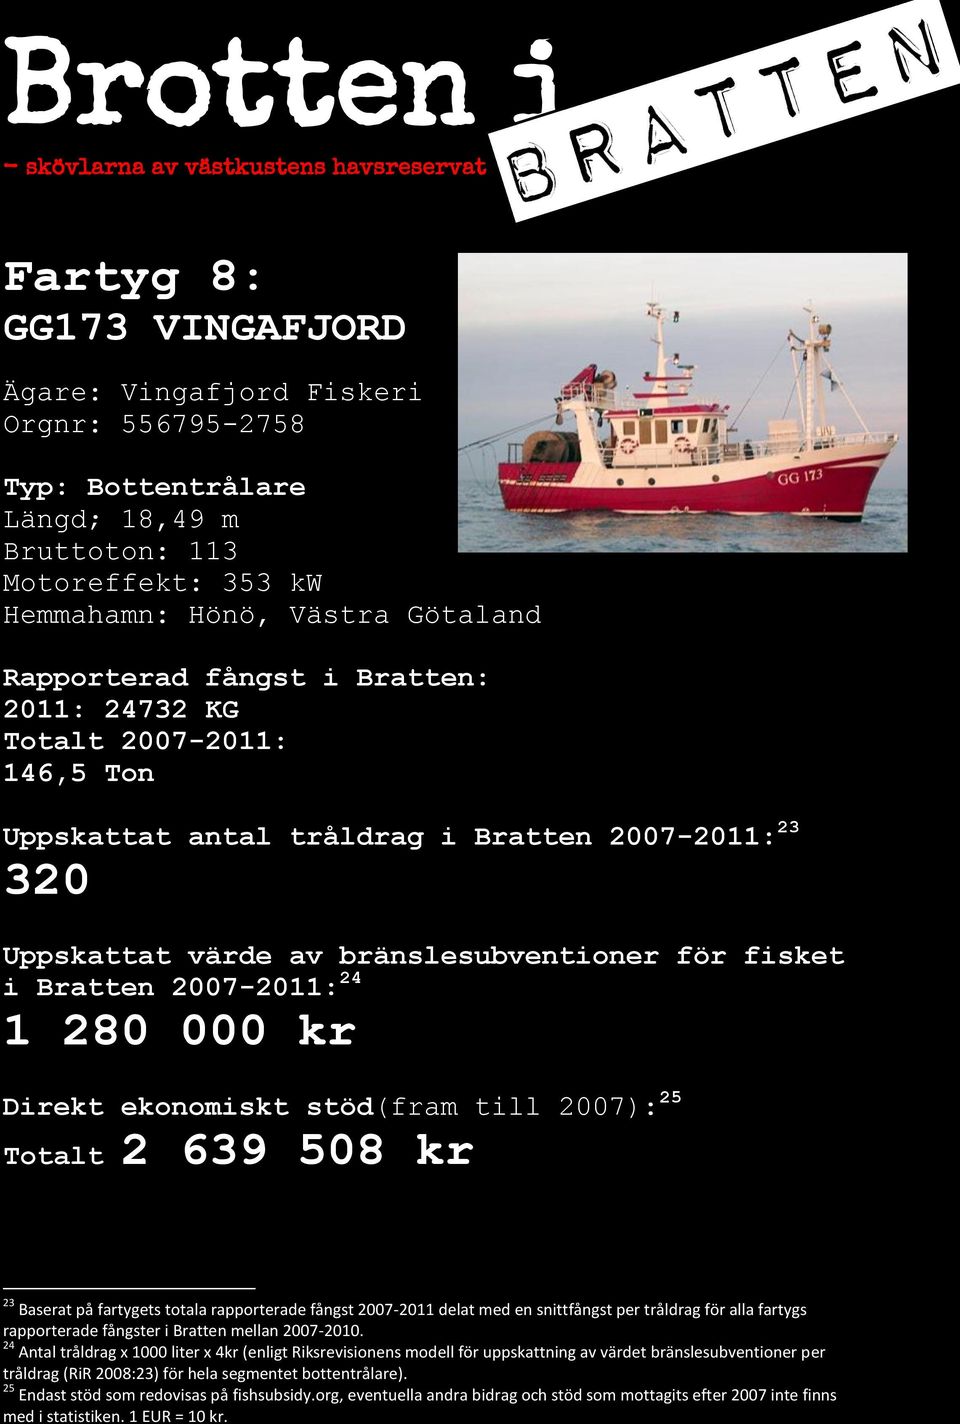 totala rapporterade fångst 2007-2011 delat med en snittfångst per tråldrag för alla fartygs 24 Antal tråldrag x 1000 liter x 4kr (enligt Riksrevisionens modell för uppskattning av